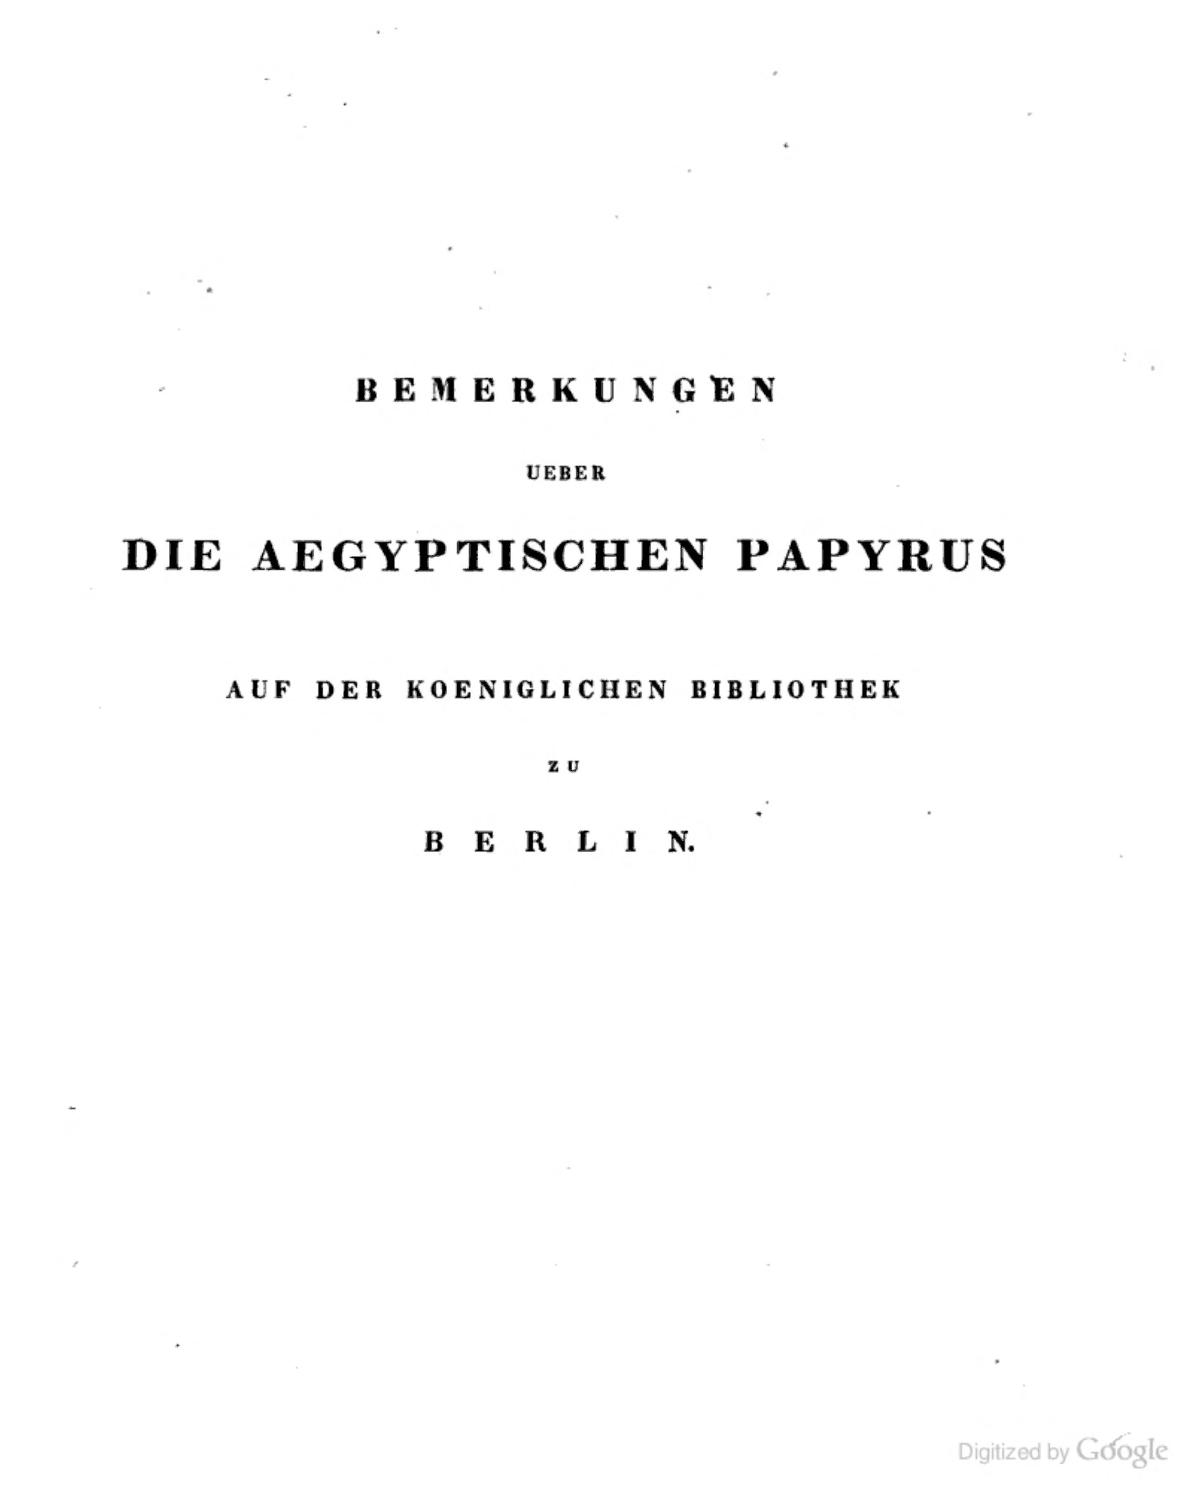 Bemerkungen ueber die aegyptischen Papyrus auf der Koeniglichen Bibliothek zu Berlin